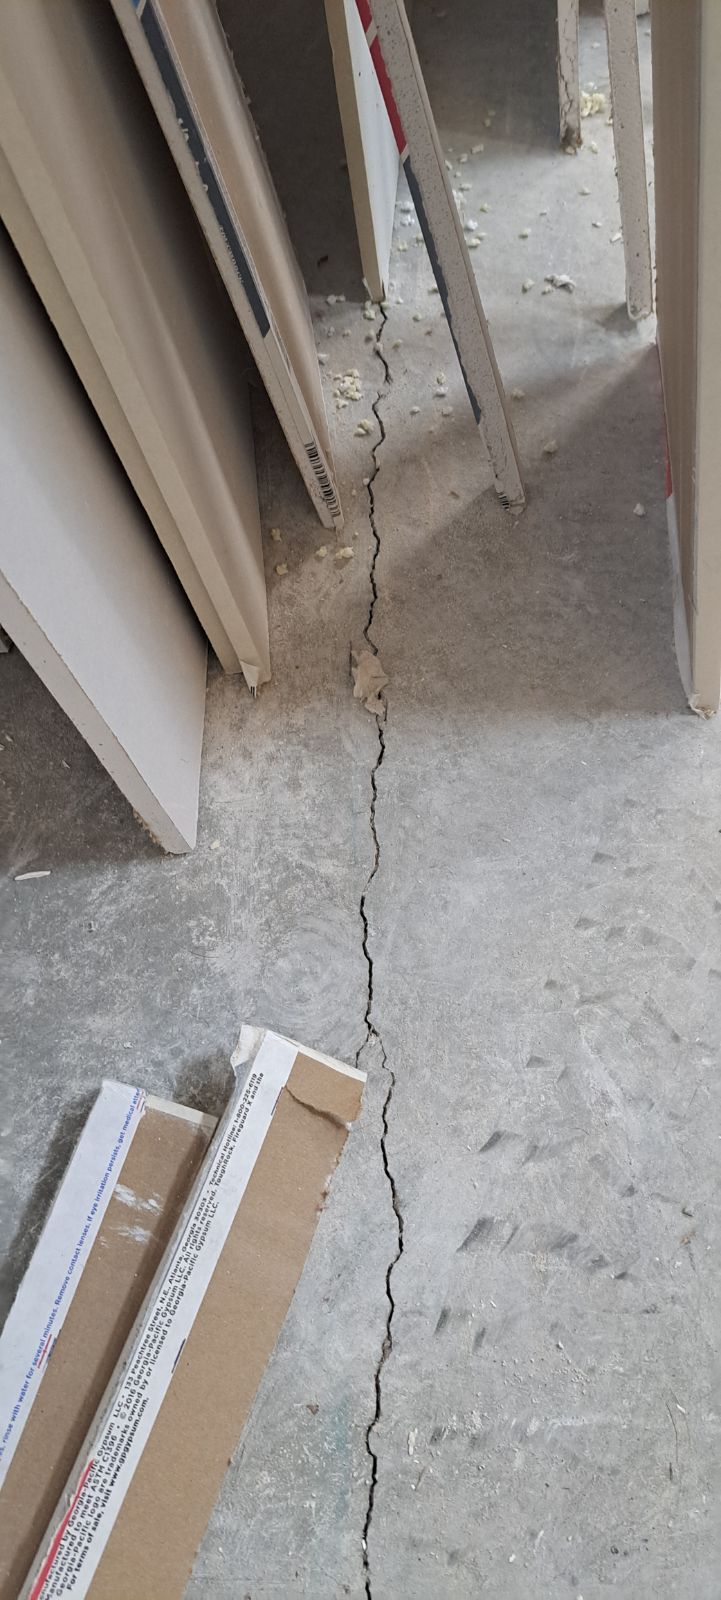 Long crack in concrete floor.